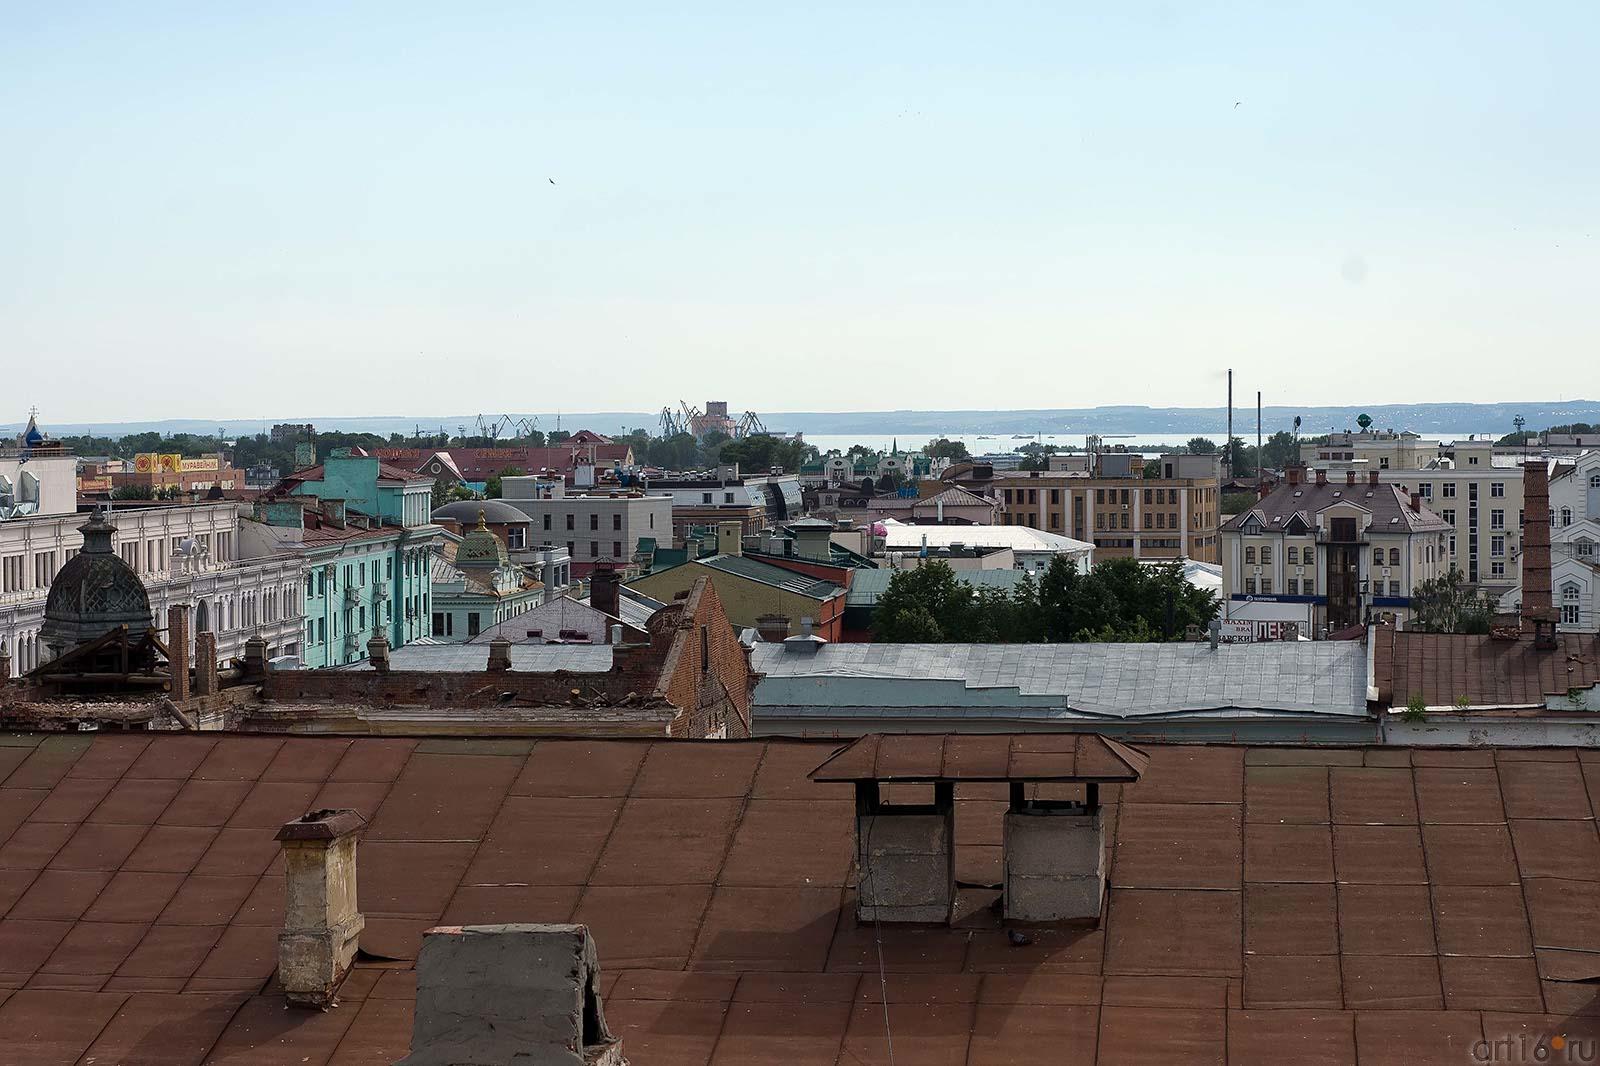  Вид с лестницы Петропавловского собора. Казань, июль 2012::К статье Вайнер Б.Г.